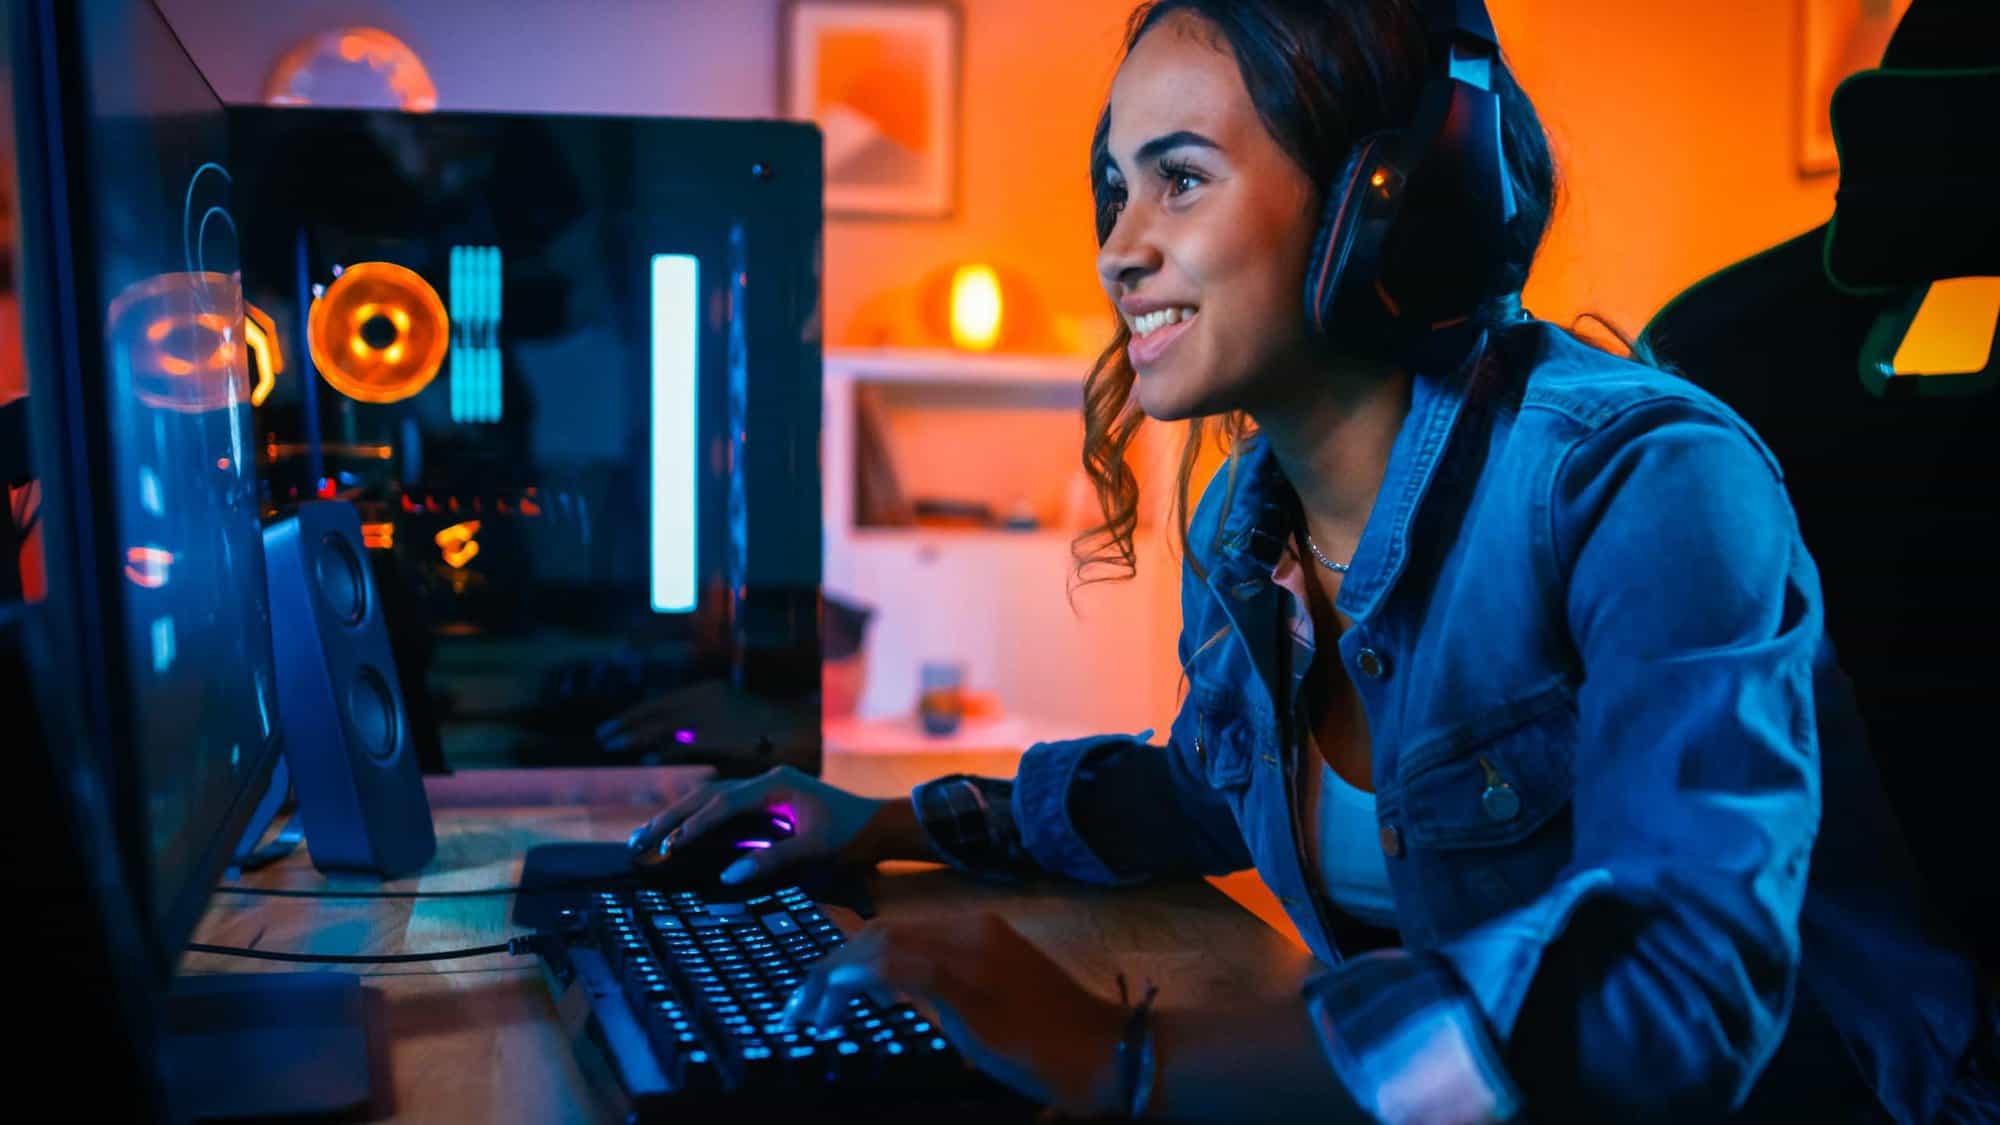 Ciberatleta cria associação de apoio às mulheres nos jogos eletrônicos -  22/10/2021 - UOL Universa